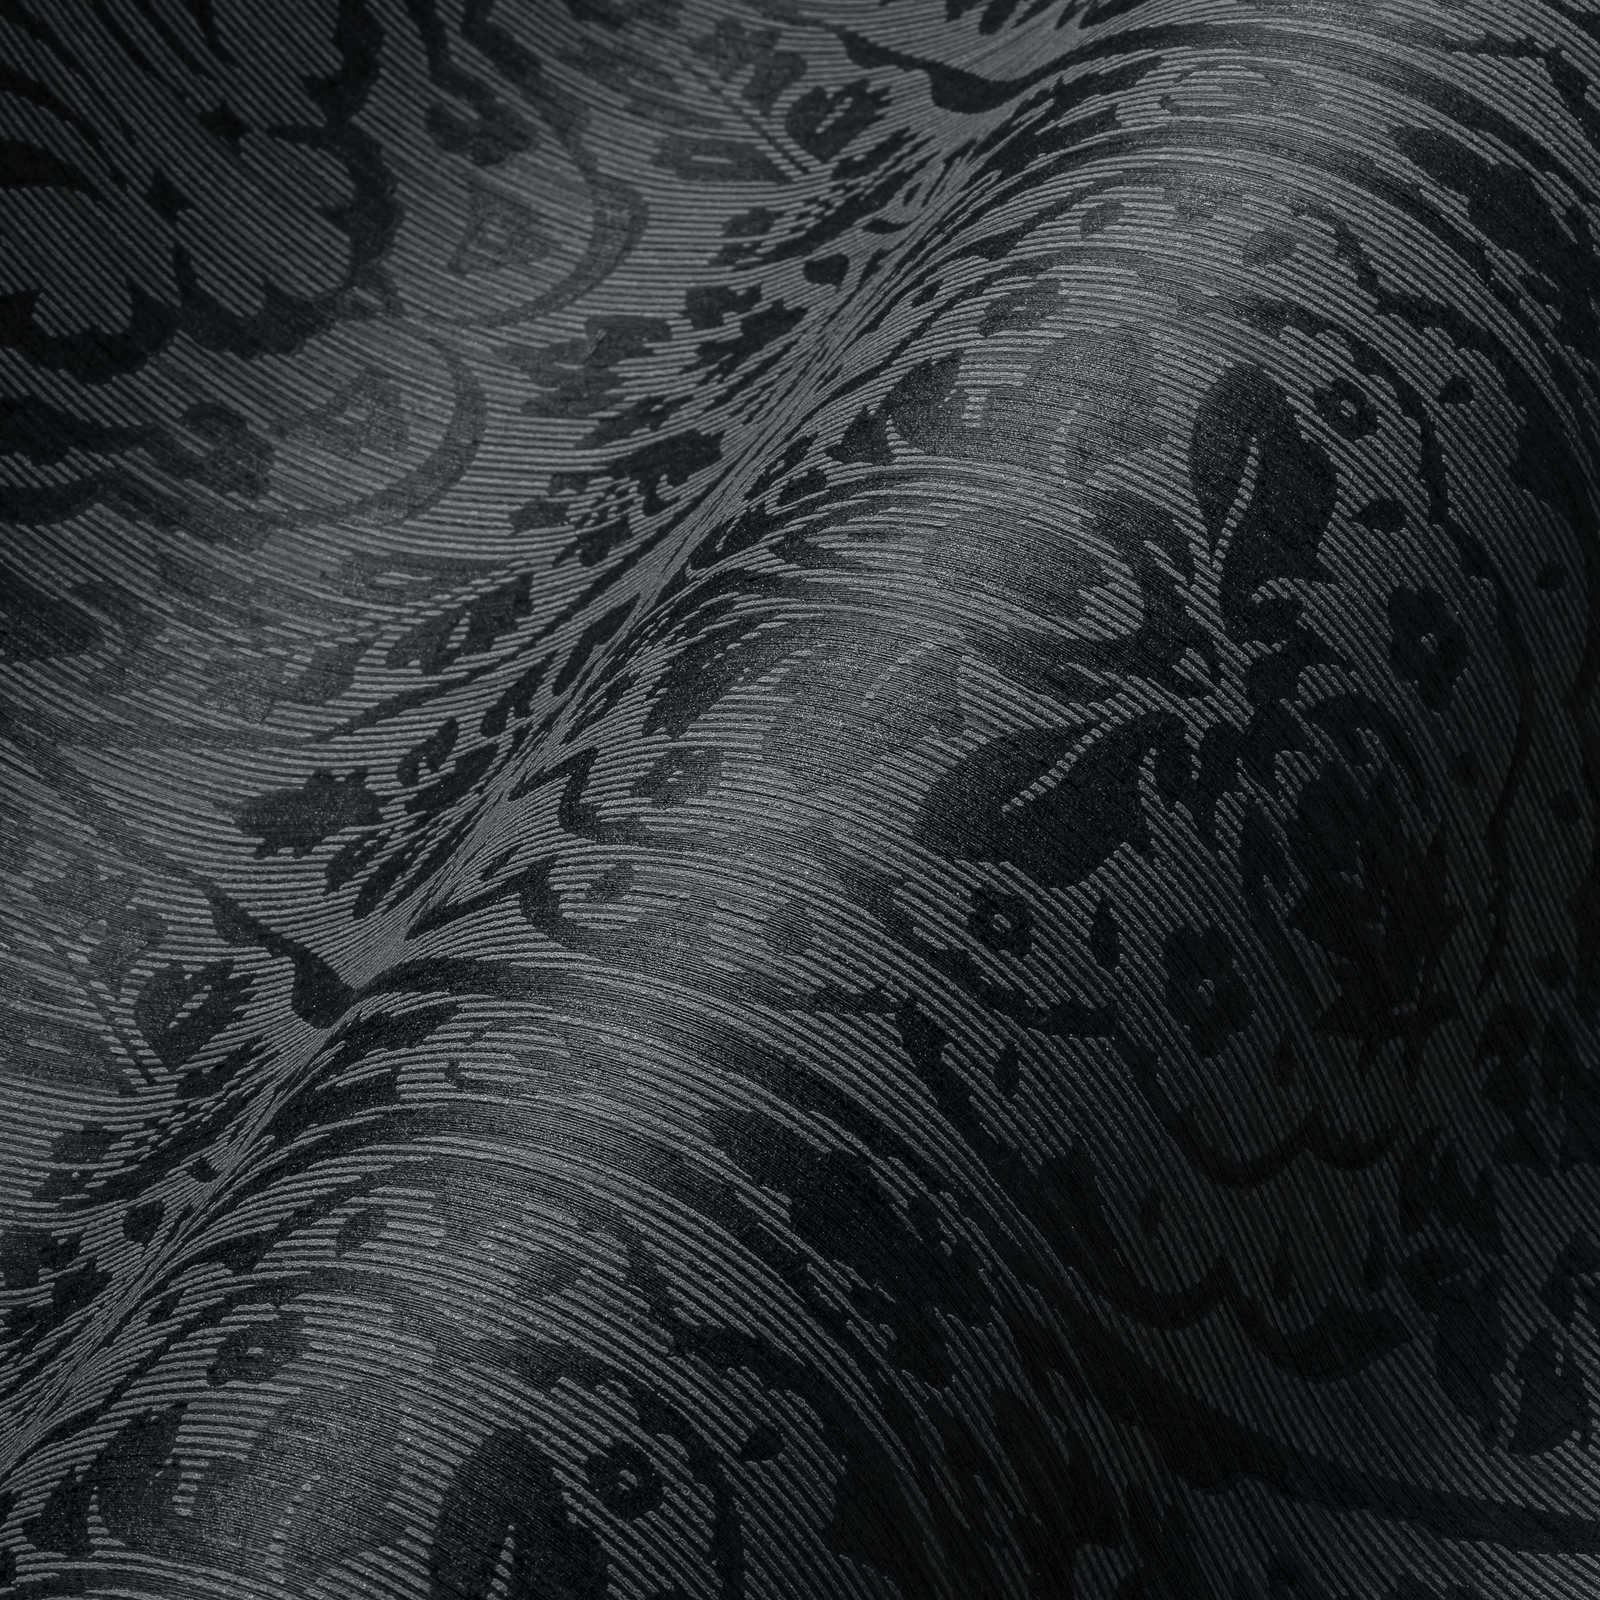             Florale Ornament Tapete im Kolonial Stil – Grau, Schwarz
        